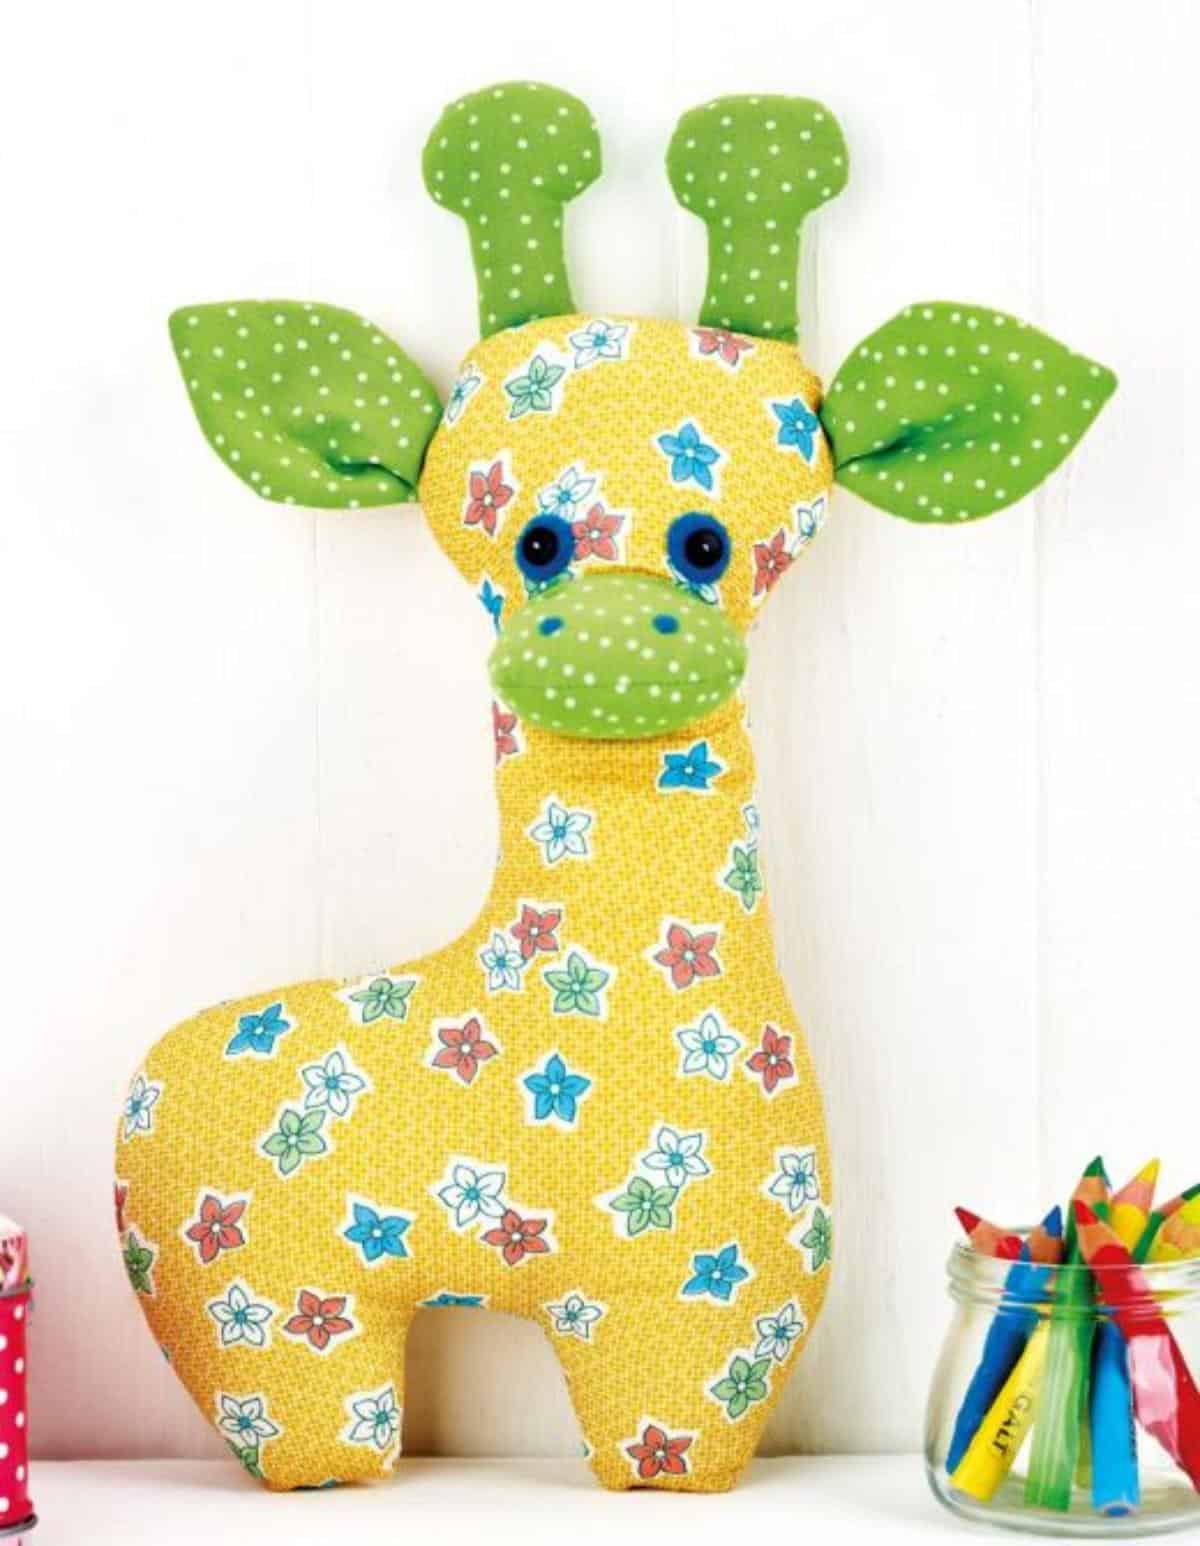 DIY Giraffe Toy